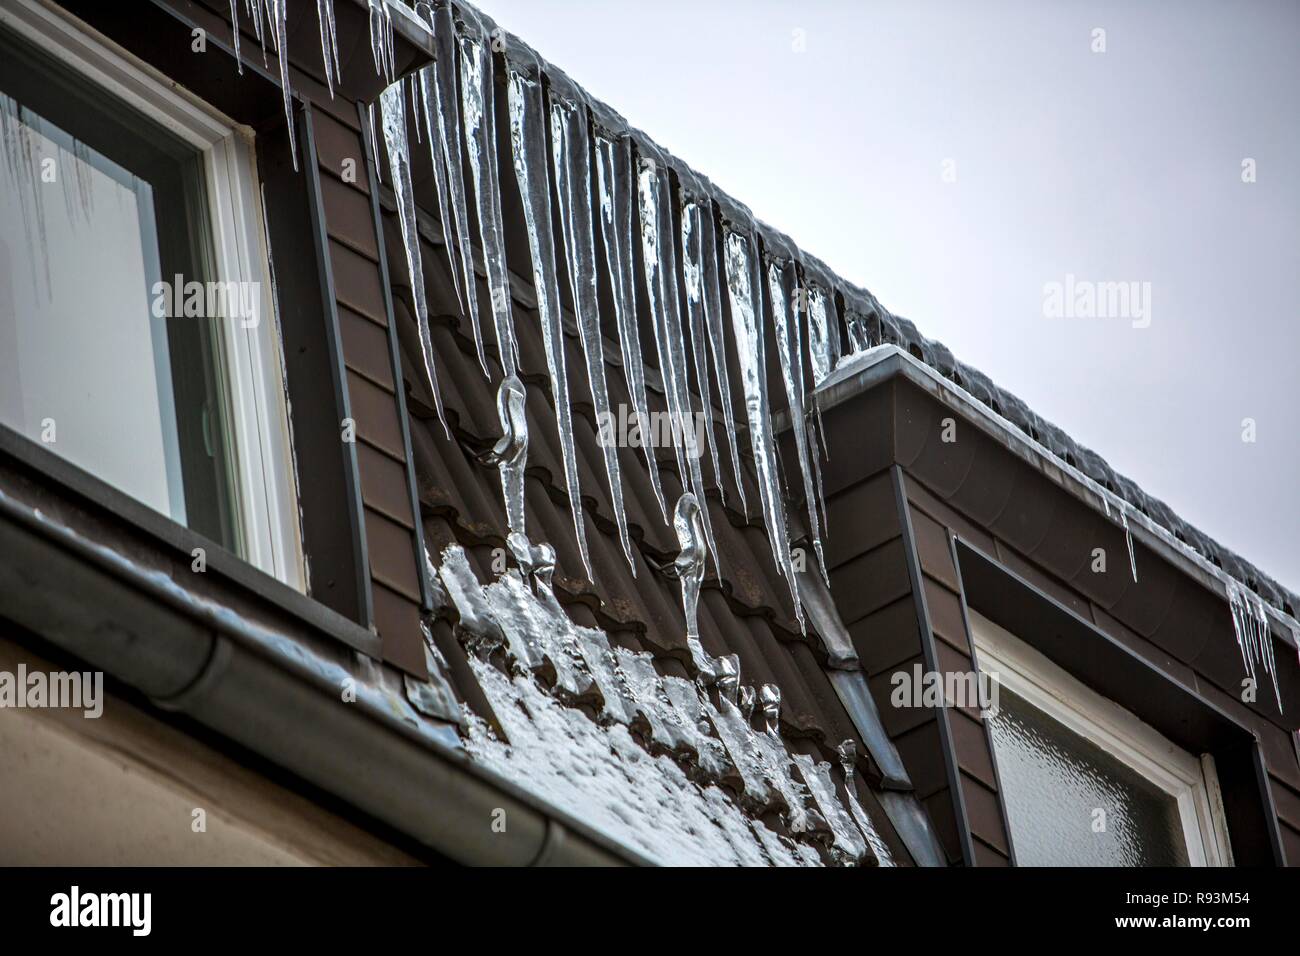 Große Eiszapfen hängen von der Traufe eines Hauses, Zeichen eines schlecht wärmegedämmten Dach, Essen, Nordrhein-Westfalen, Deutschland Stockfoto